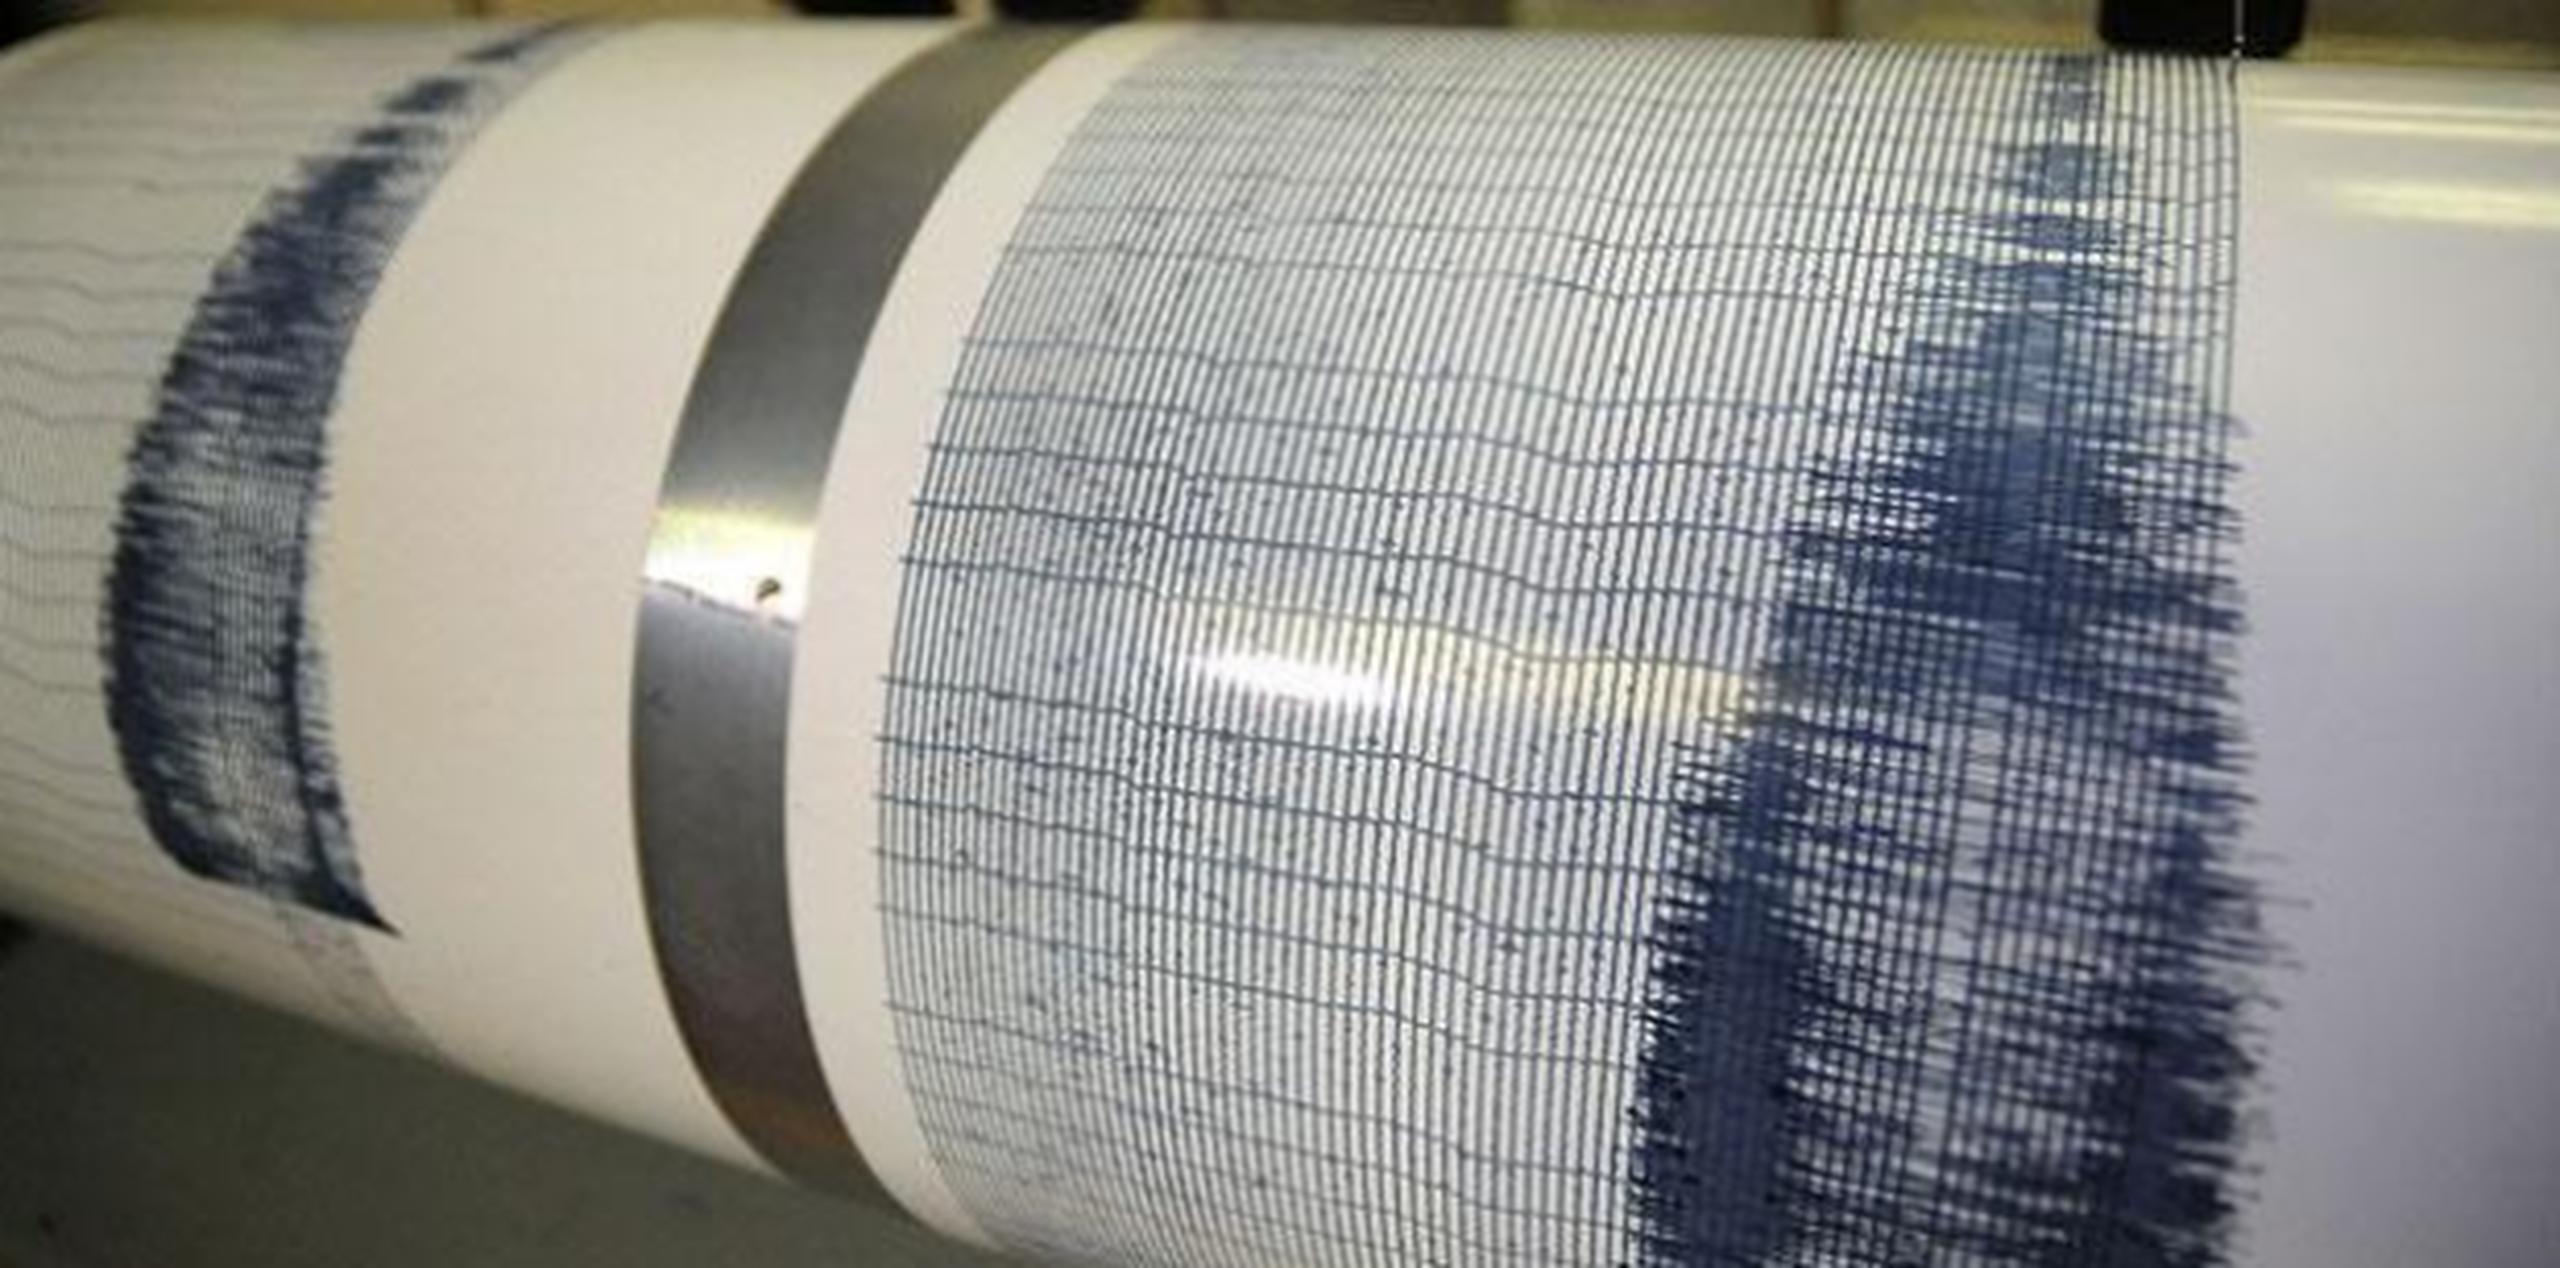 El temblor tuvo una magnitud 4.2 en la escala abierta de Richter. (Archivo)